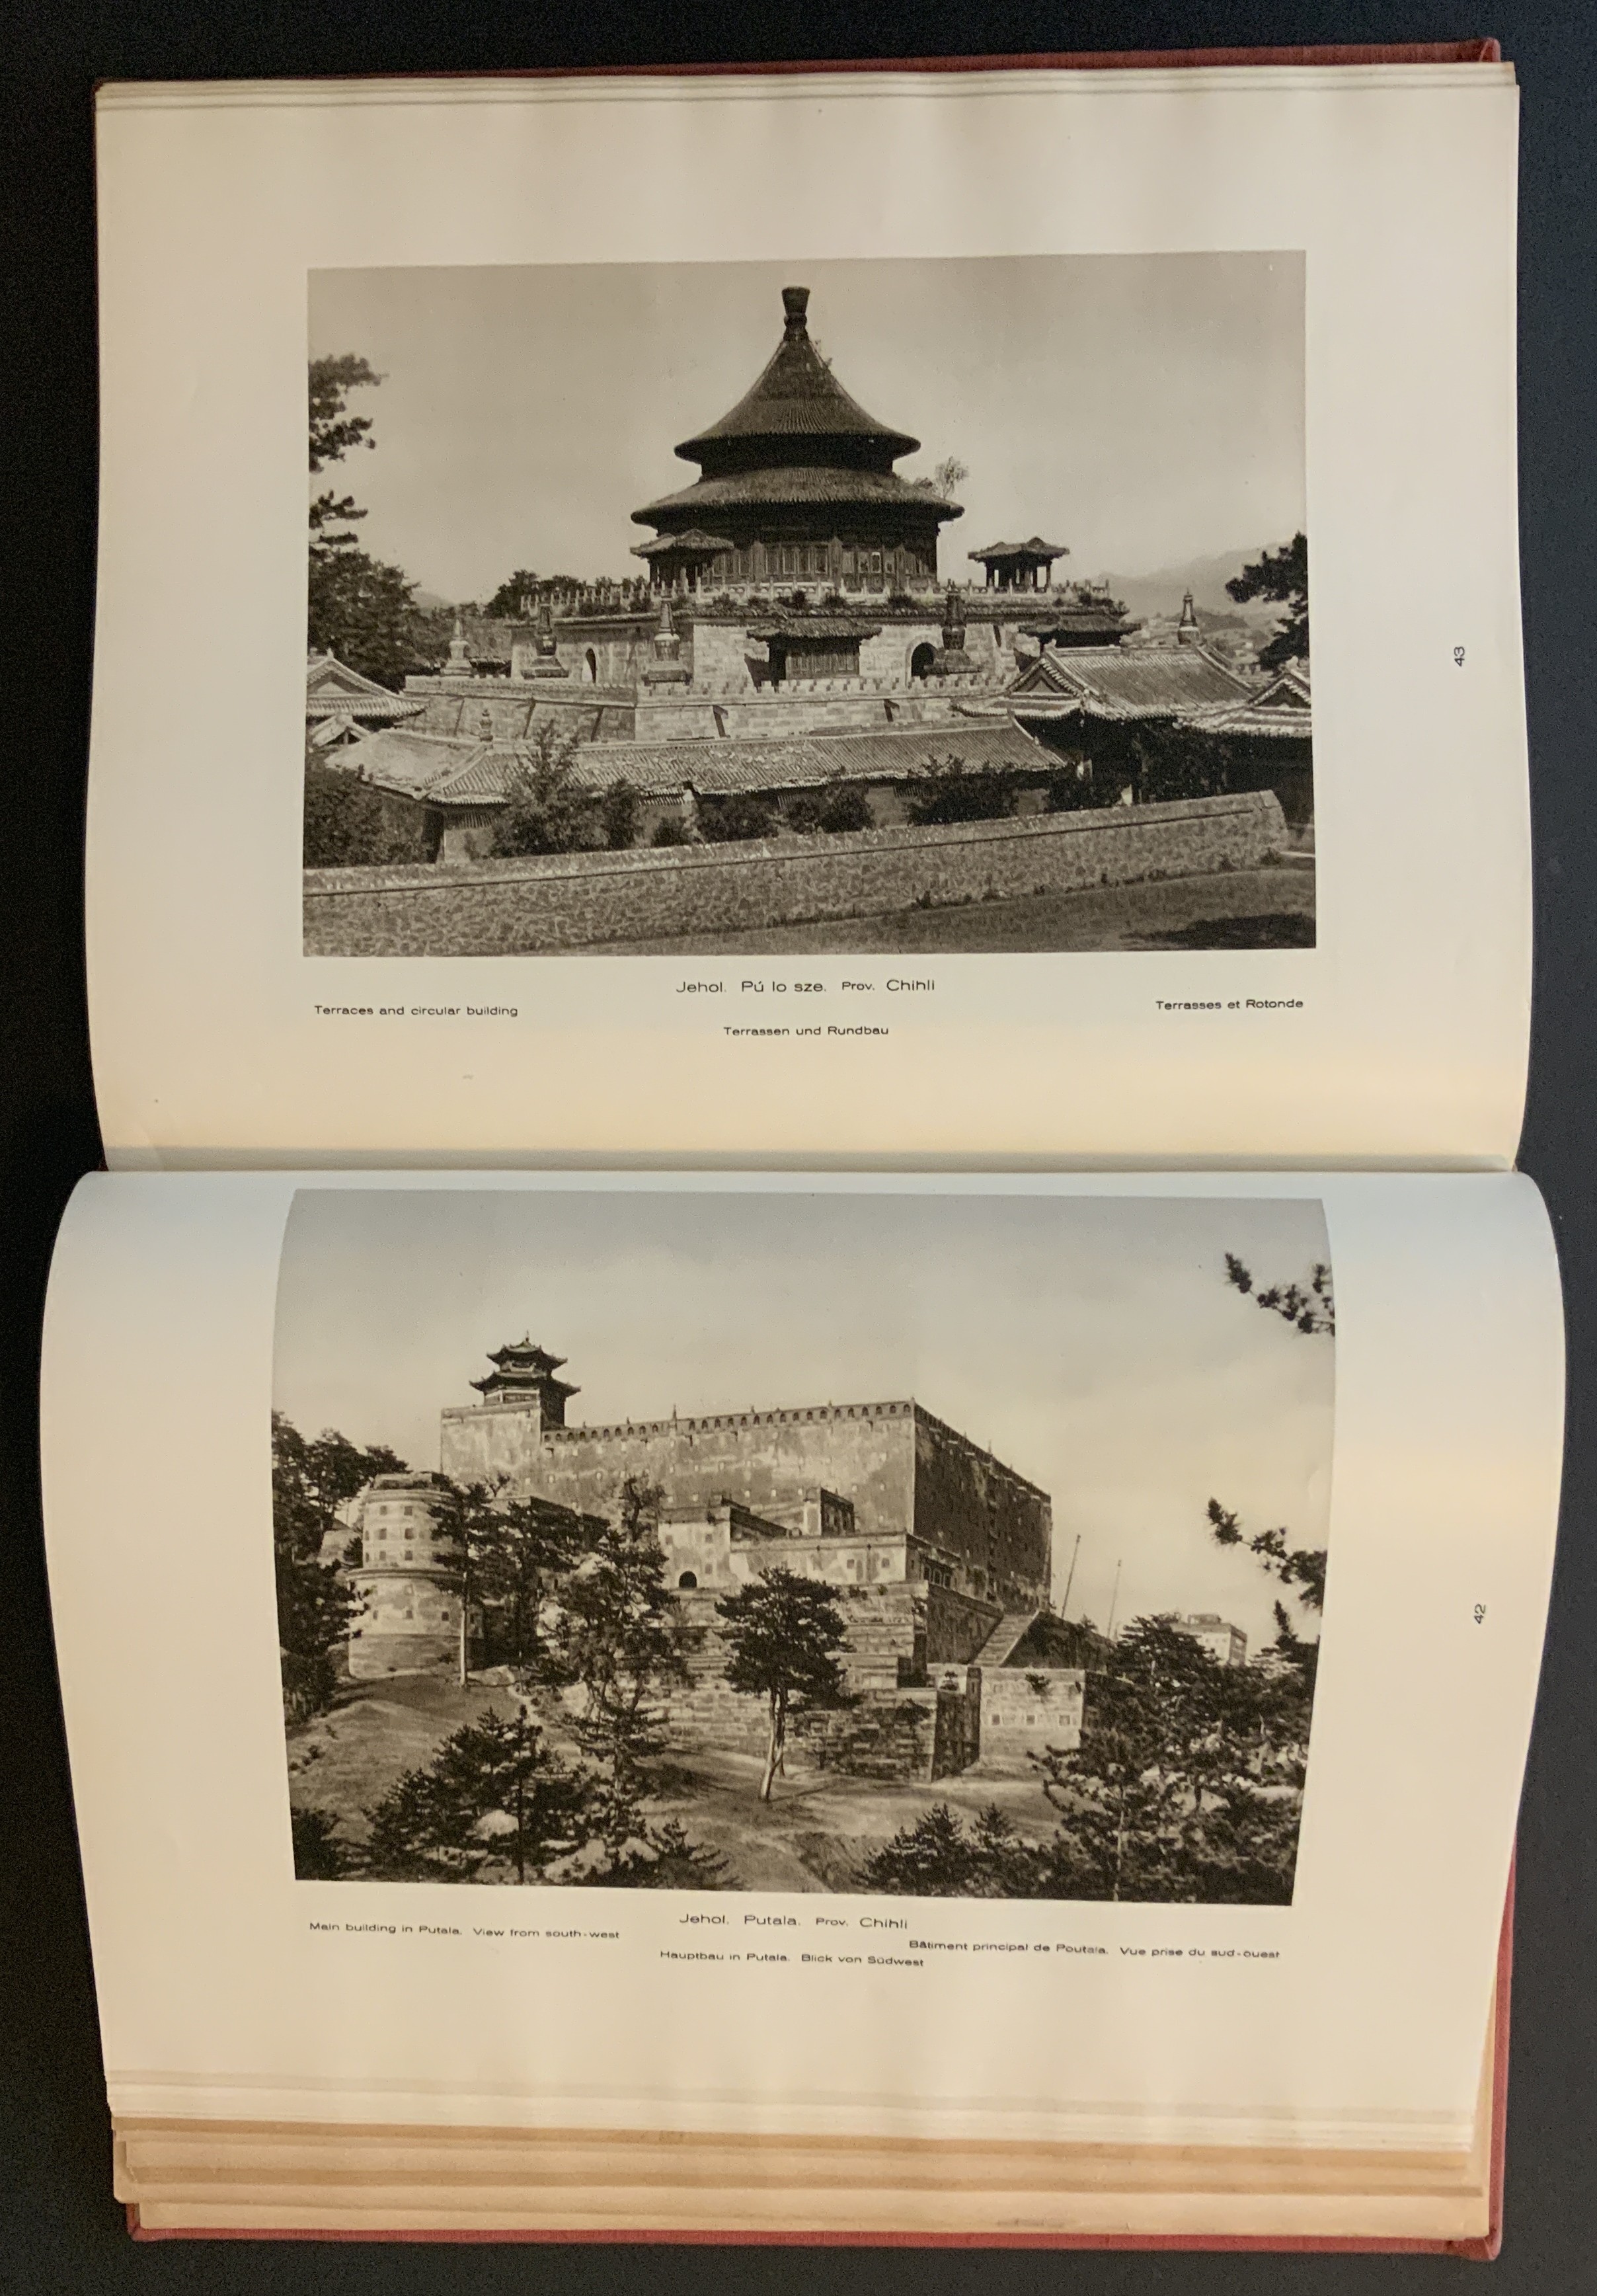 LA CHINE PITTORESQUE BY D'ERNEST BOERSCHMANN PUBLISHED BY LIBRAIRIE DES ARTS DECORATIFS PARIS CONTAI - Image 9 of 19